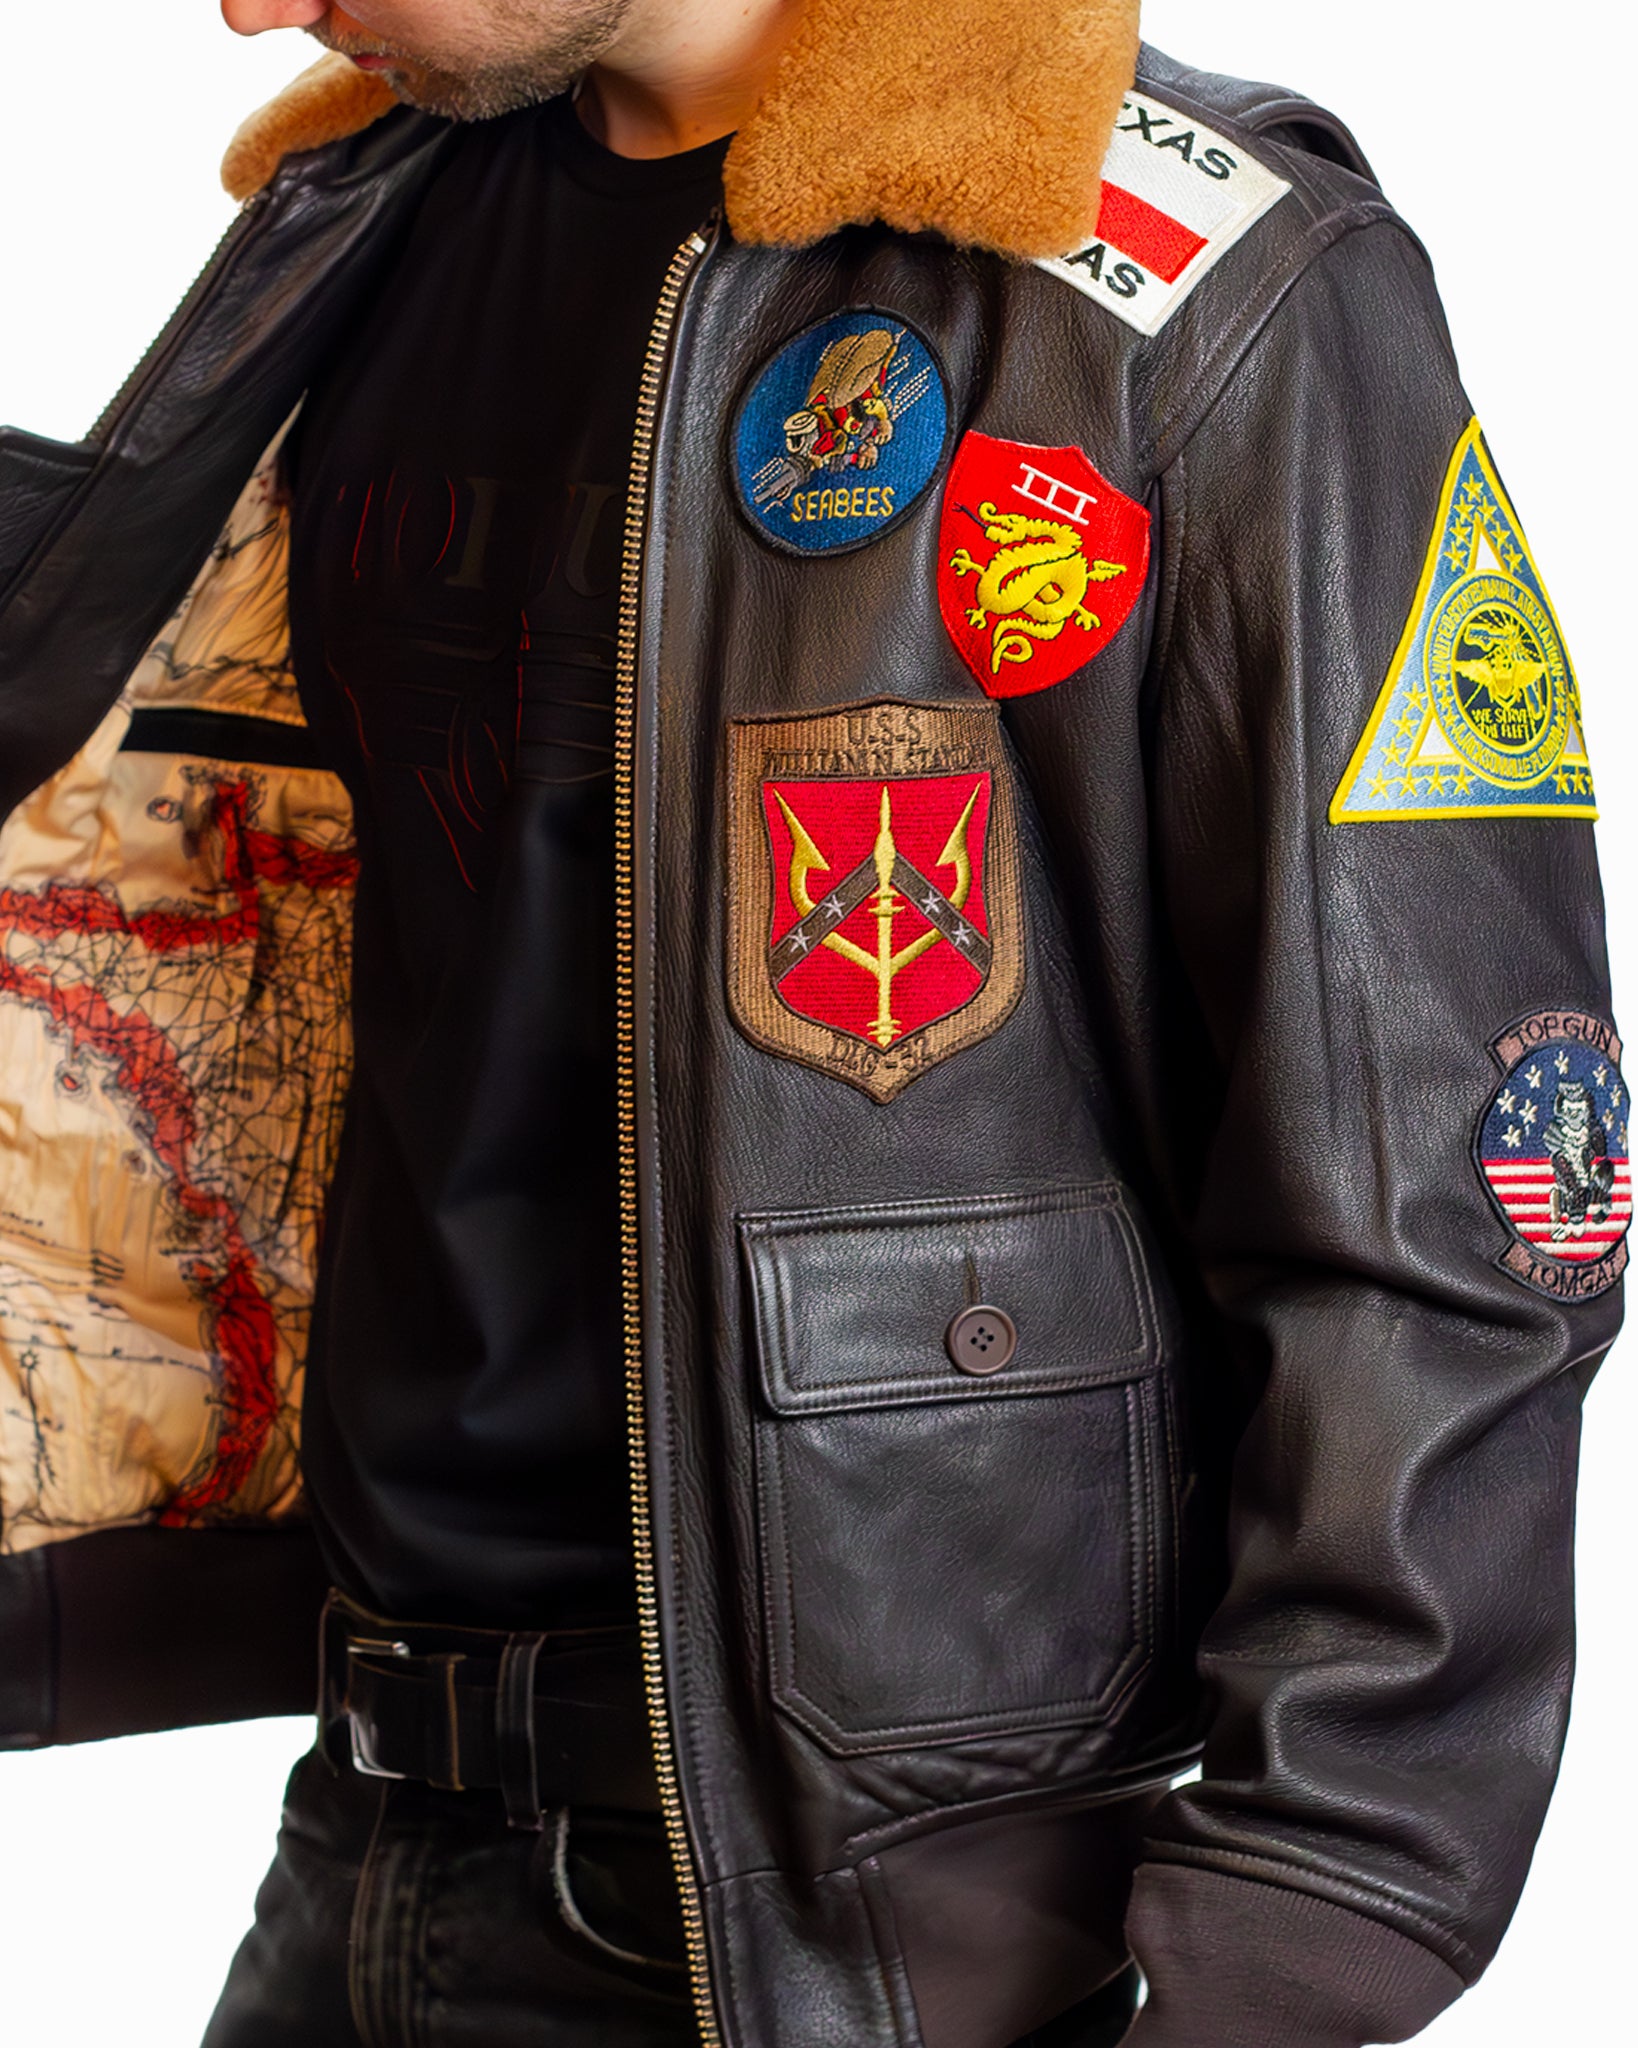 MuzeMerch - Men's G-1 Flight Jacket by Top Gun